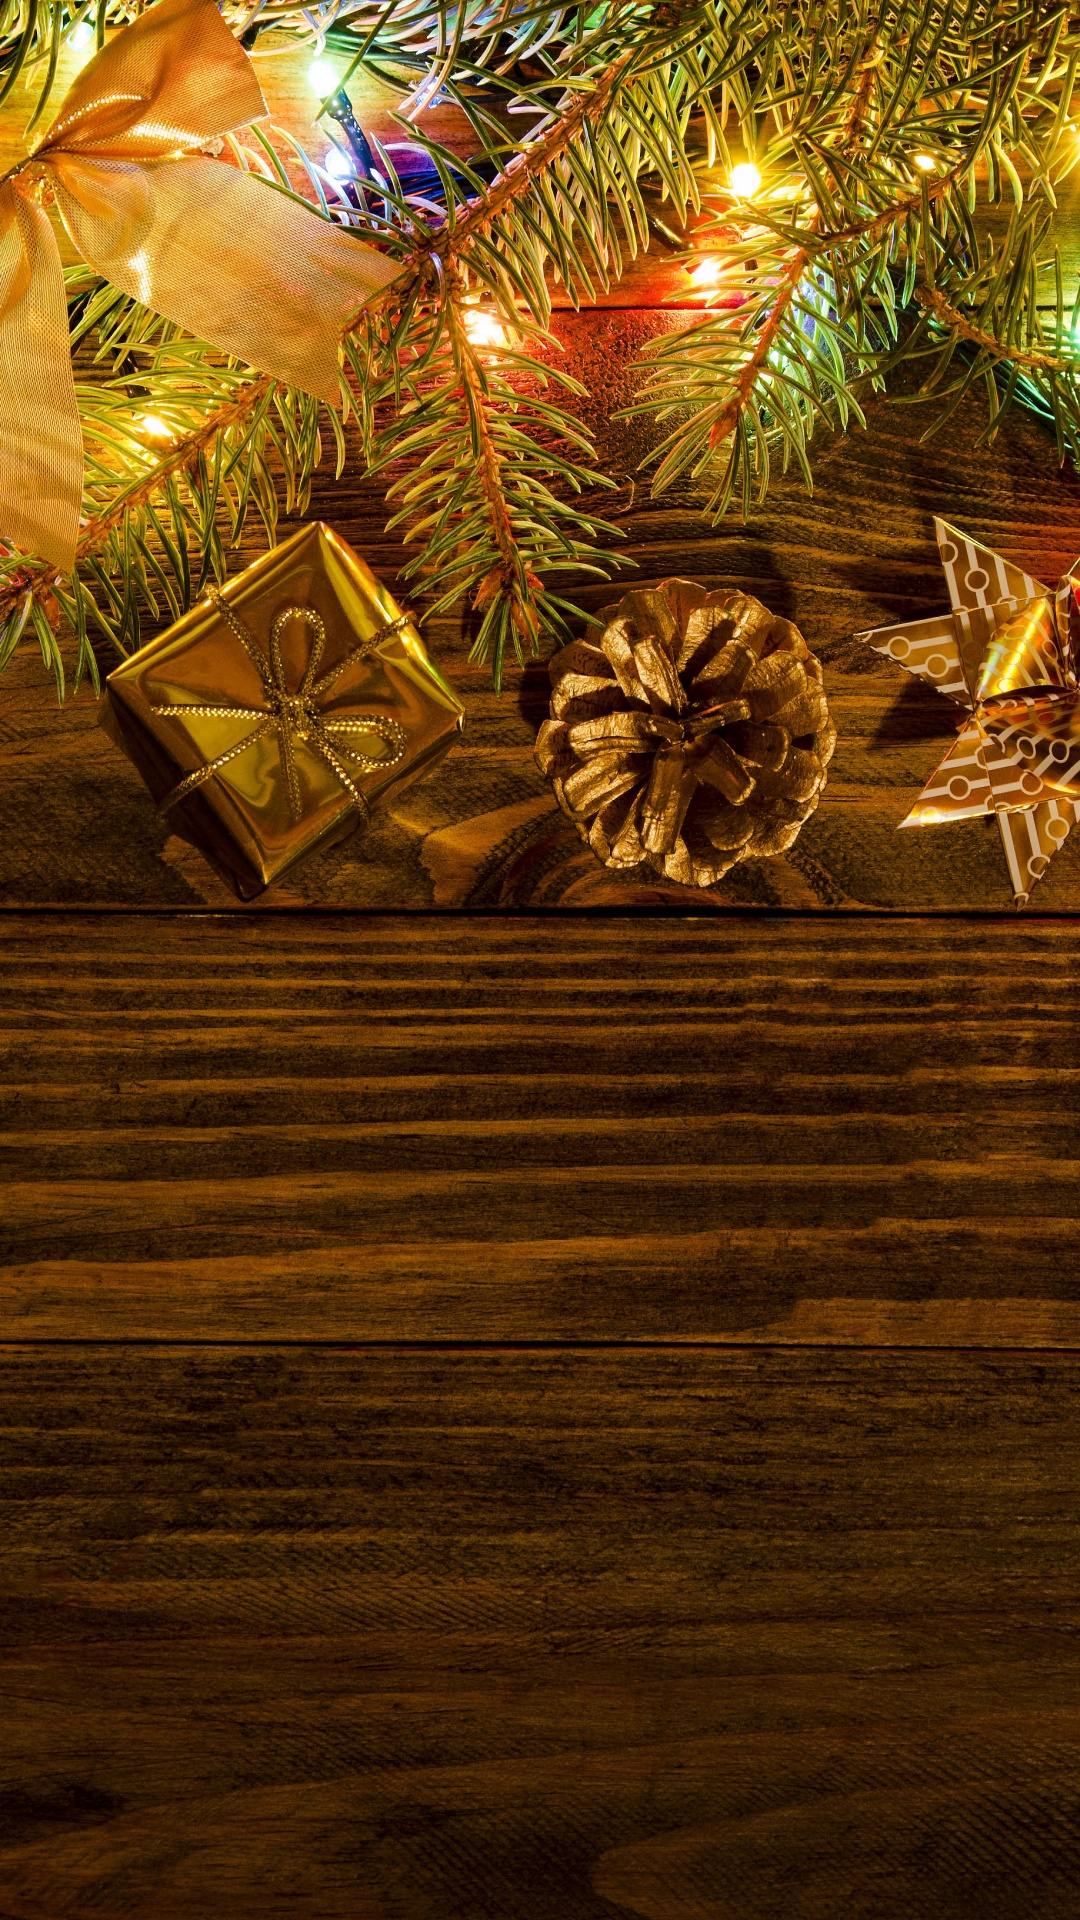 Neujahr, Weihnachten, Baum, Weihnachtsdekoration, Weihnachtsbeleuchtung. Wallpaper in 1080x1920 Resolution